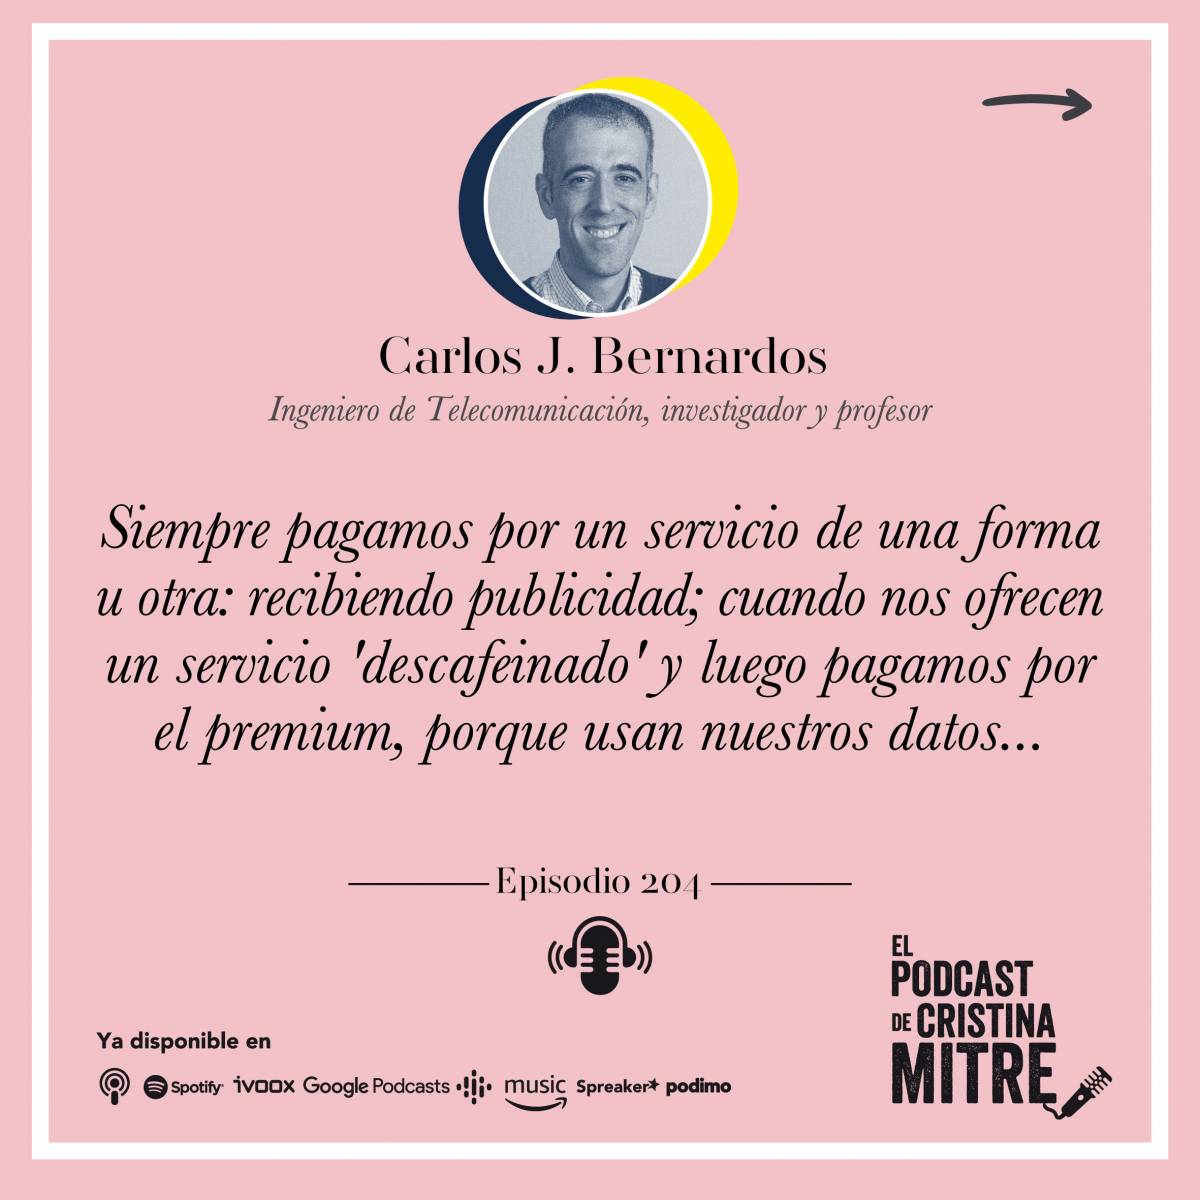 El podcast de Cristina Mitre Carlos J. Bernardos Internet datos